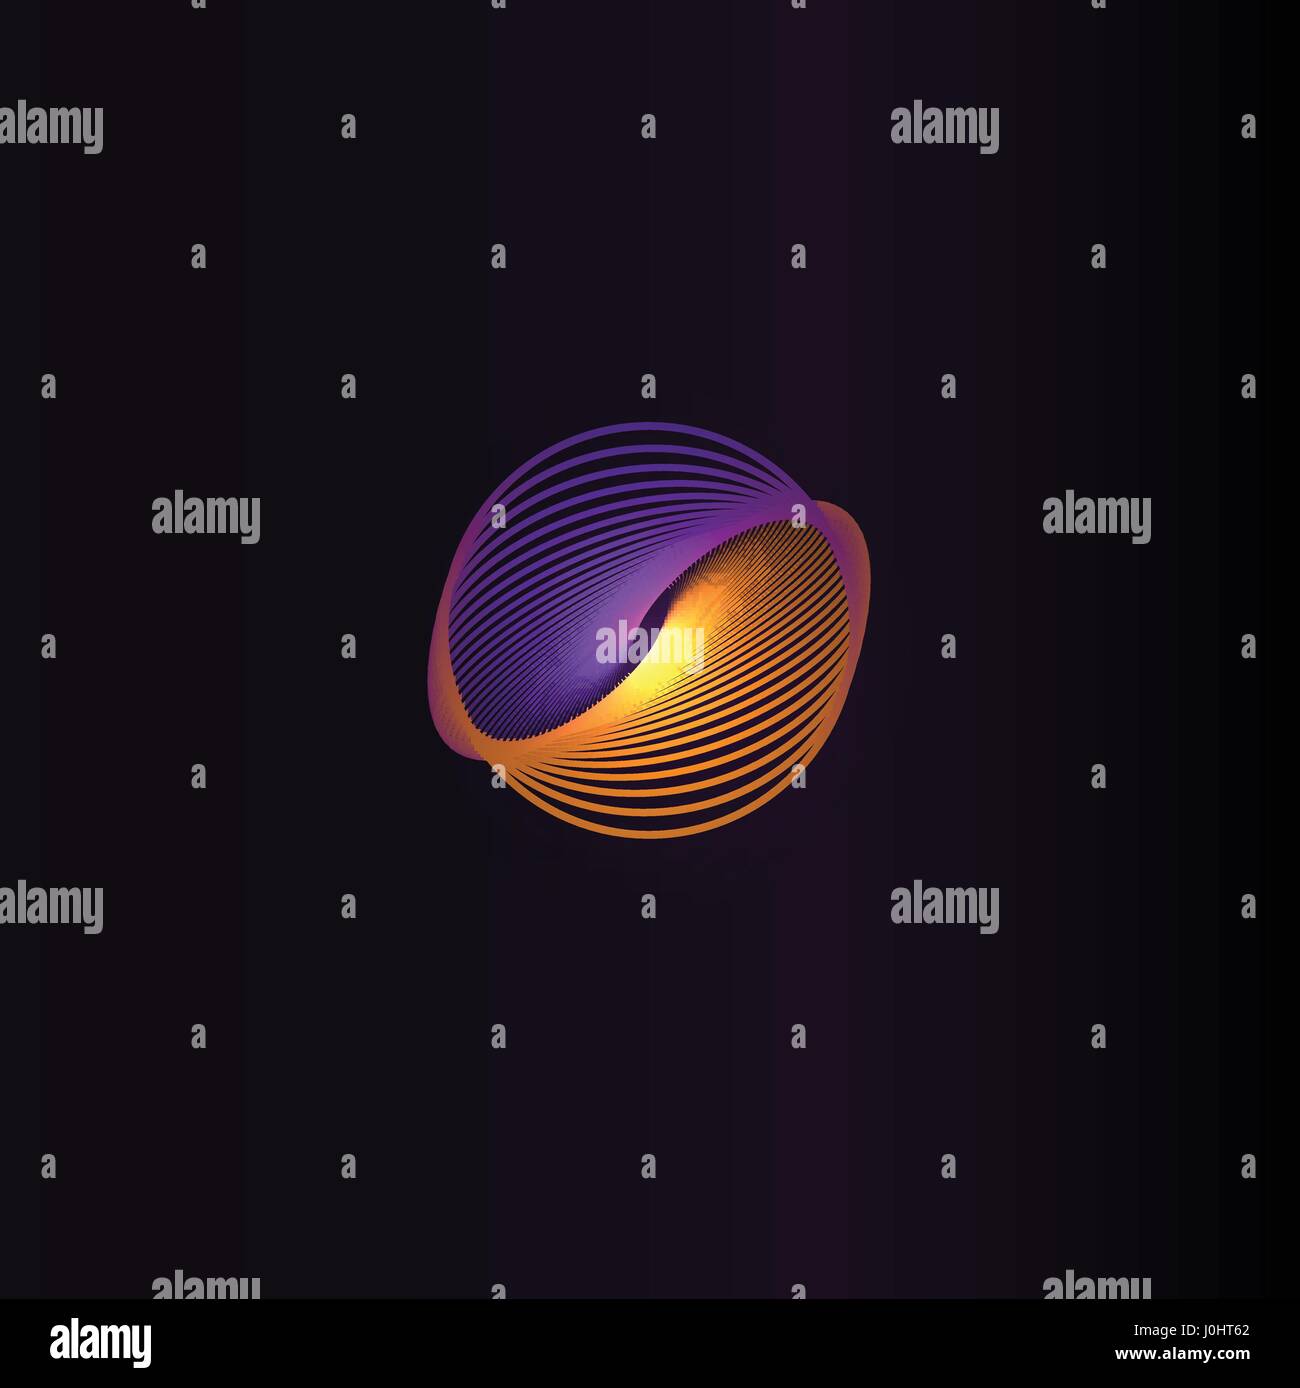 Isolierte abstrakt bunt Runde Form Logo, Raum Element, Wirbel-Logo, Planeten-Symbol auf schwarzem Hintergrund Vektor-illustration Stock Vektor